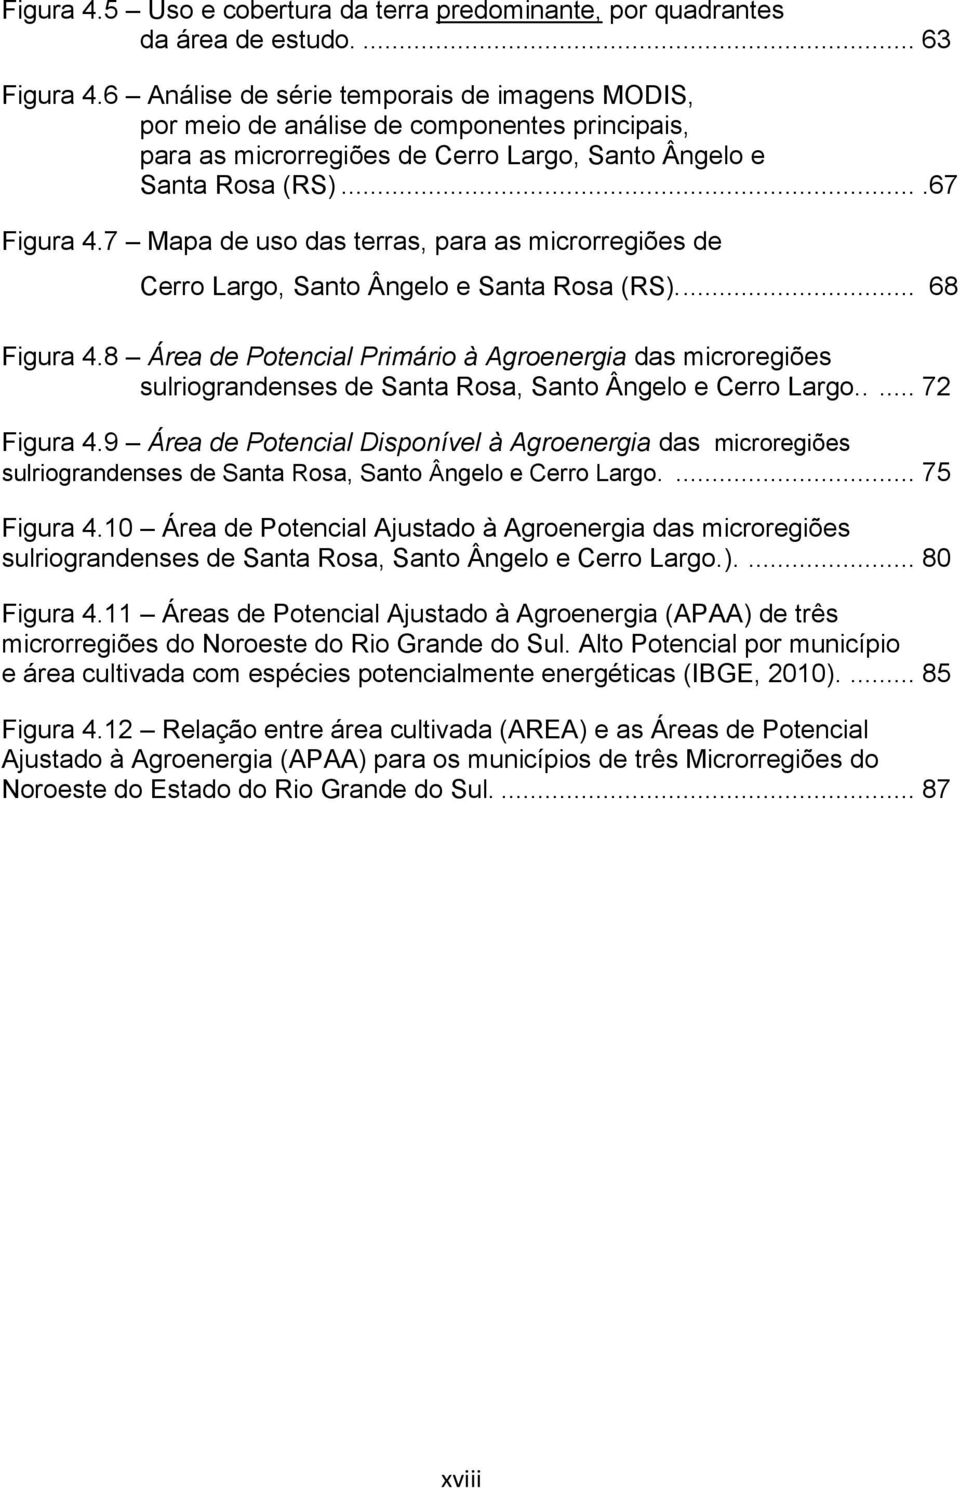 7 Mapa de uso das terras, para as microrregiões de Cerro Largo, Santo Ângelo e Santa Rosa (RS).... 68 Figura 4.